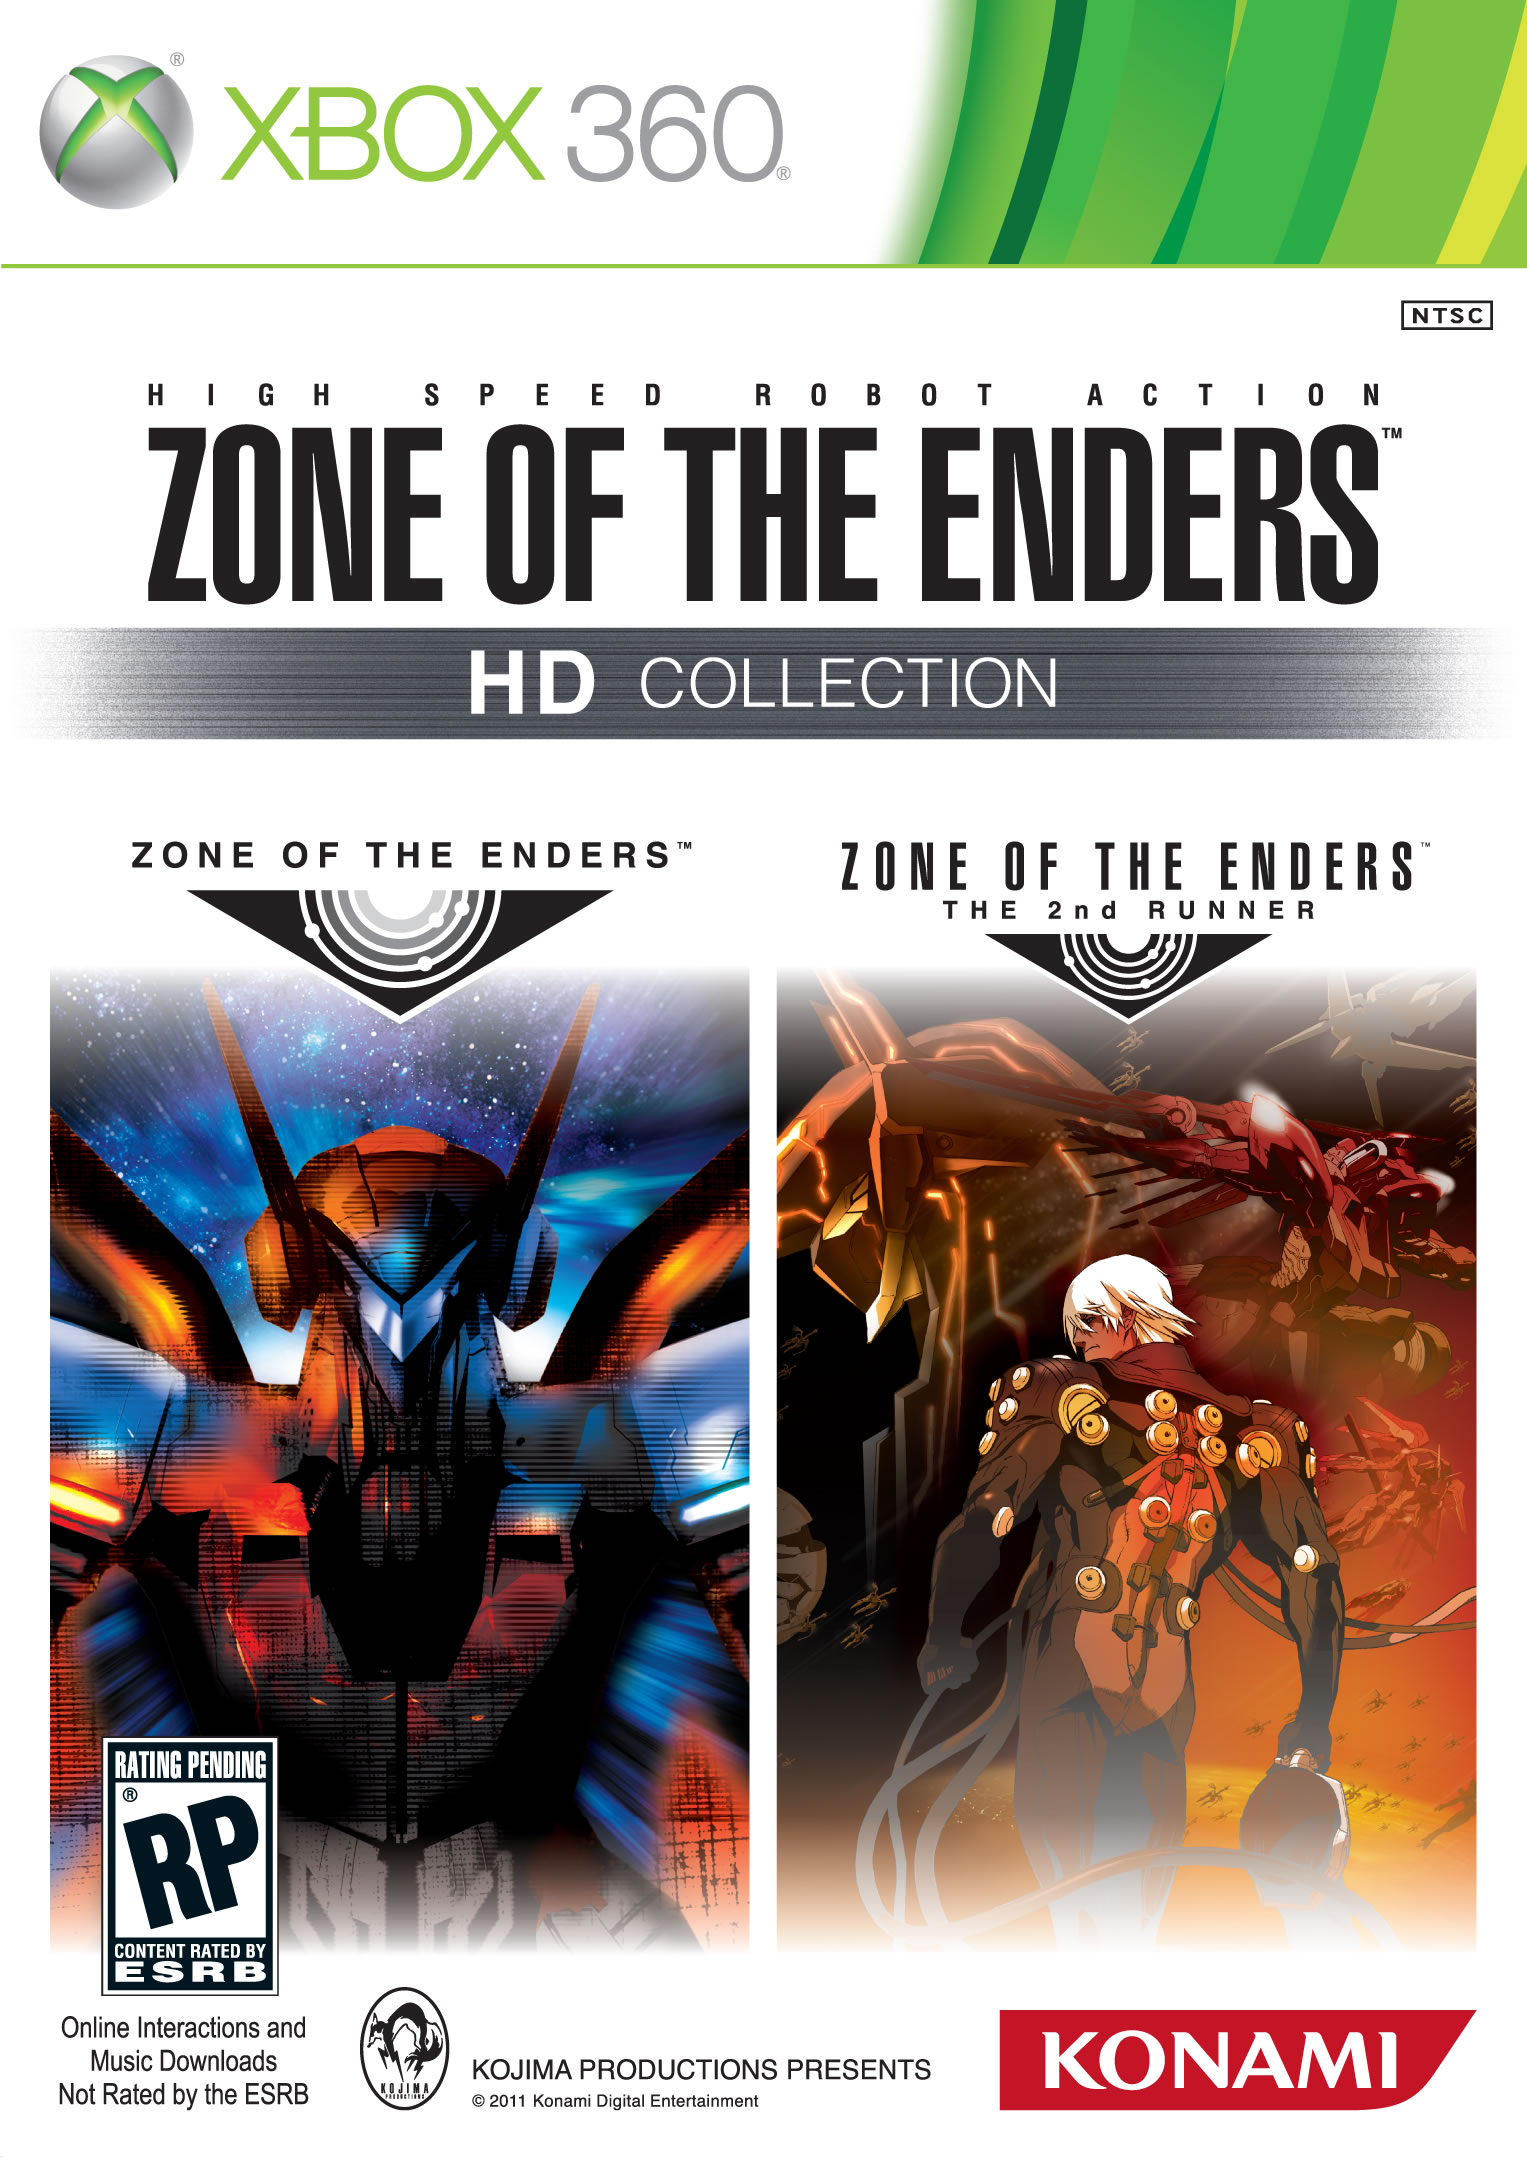 Zone of the Enders HD Collection : Nouvelles images de la Comic-Con